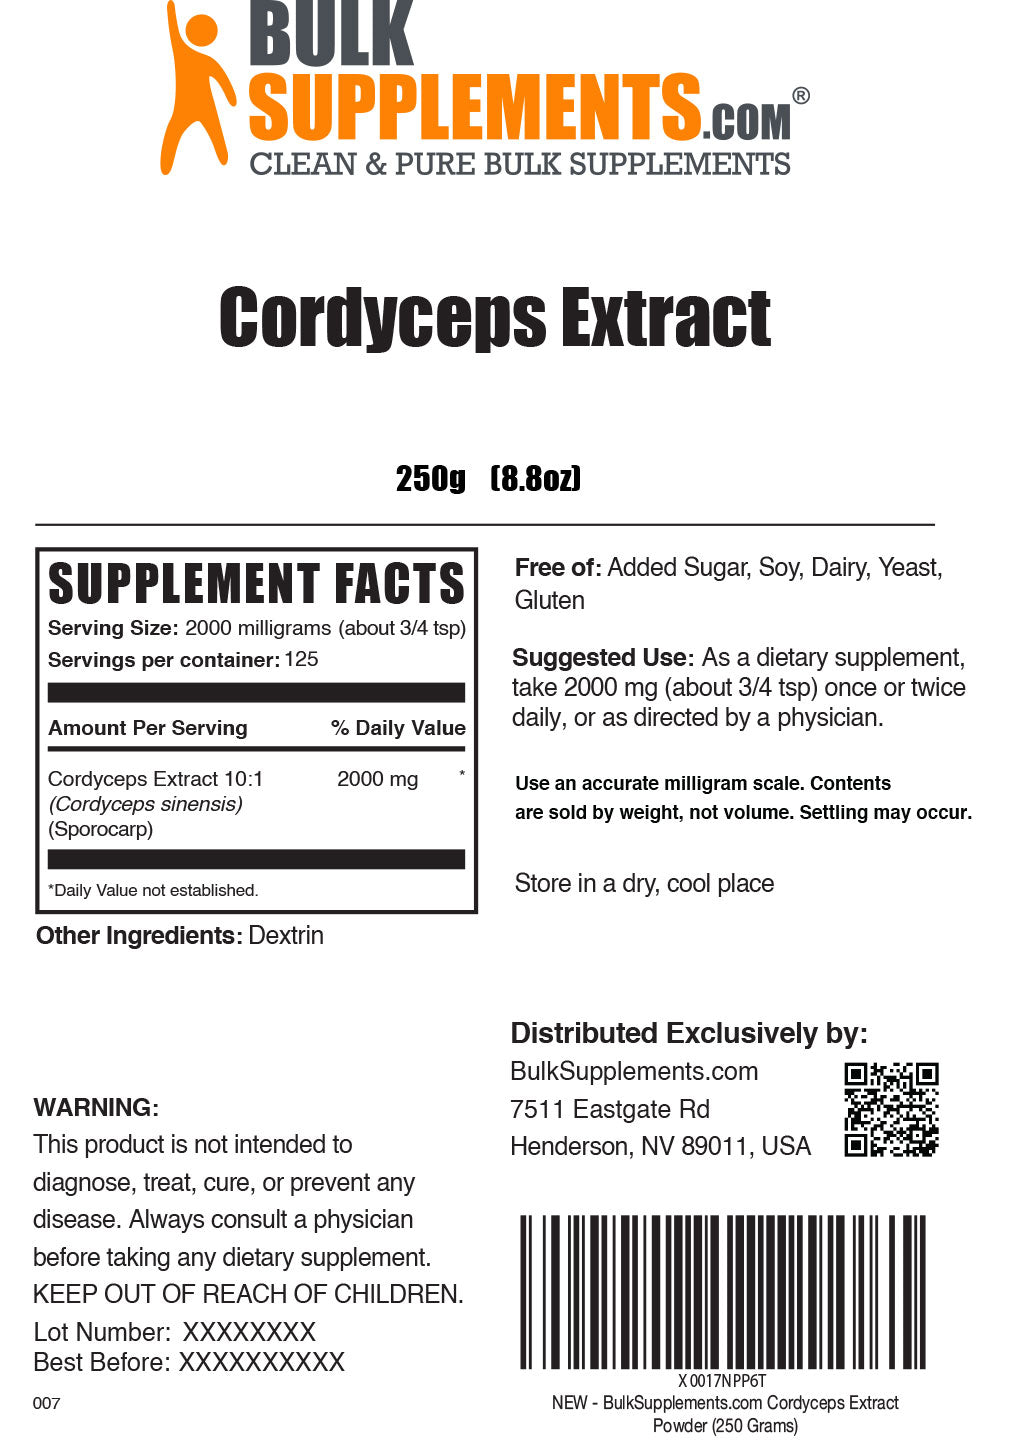 Pudră de extract de Cordyceps